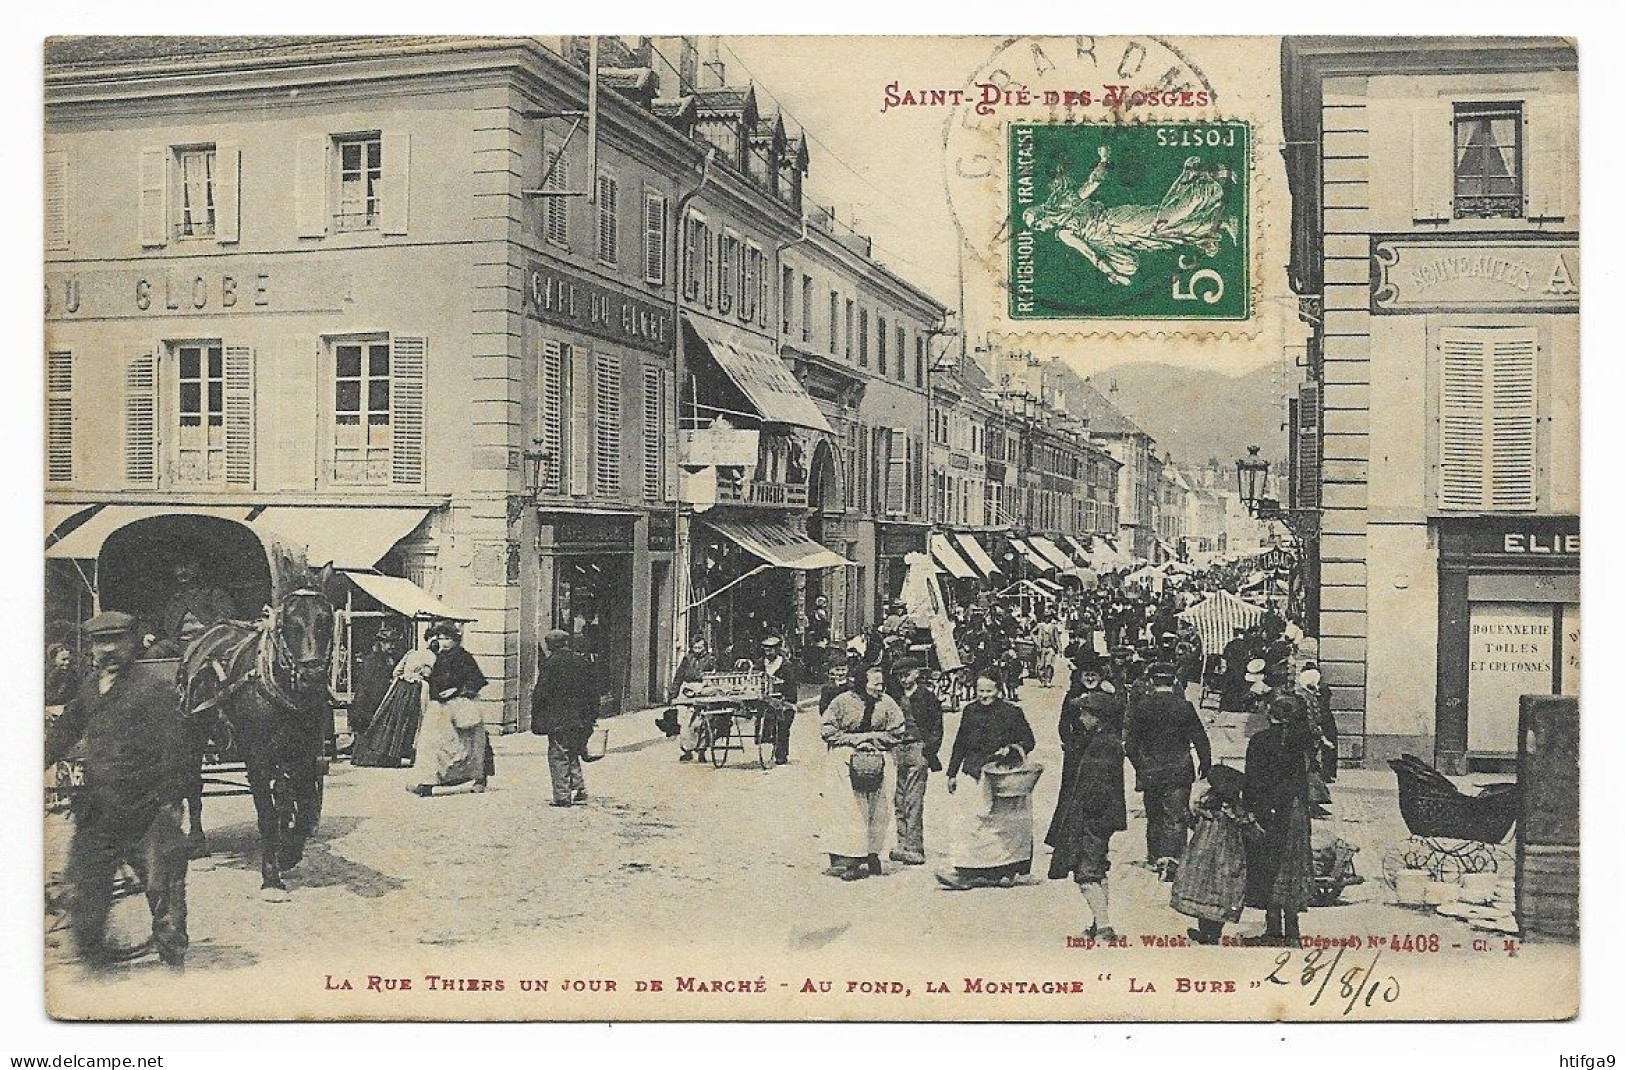 SAINT DIE 1910 Marché Café GLOBE Près LA BURE Epinal Thaon Les VOSGES Neufchâteau Remiremont Gérardmer Plombières Raon - Plainfaing